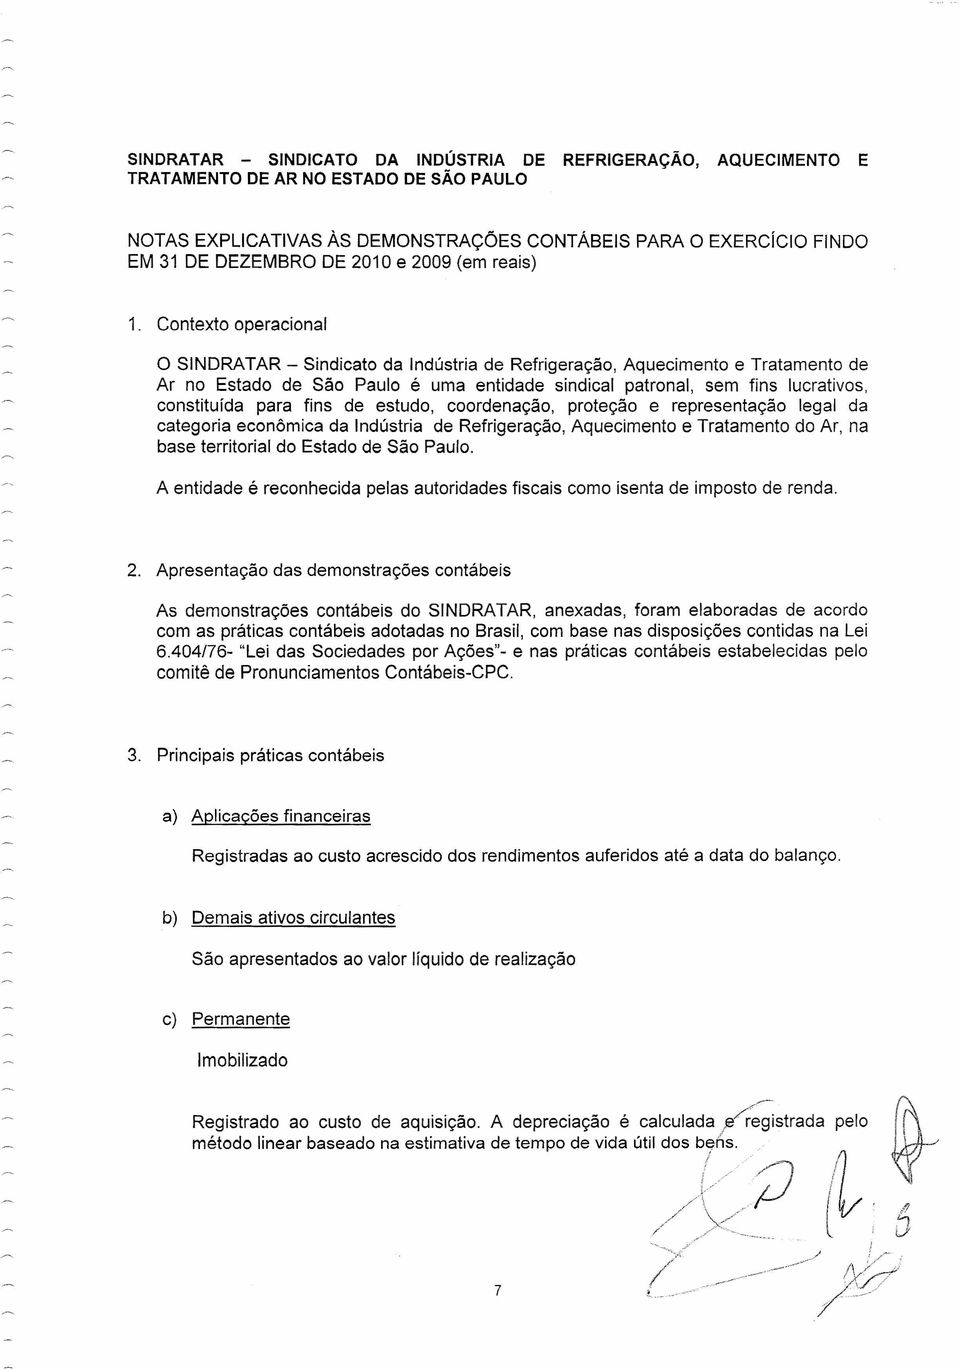 Contexto operacional O SINDRATAR - Sindicato da Indústria de Refrigeração, Aquecimento e Tratamento de Ar no Estado de São Paulo é uma entidade sindical patronal, sem fins lucrativos, constituída